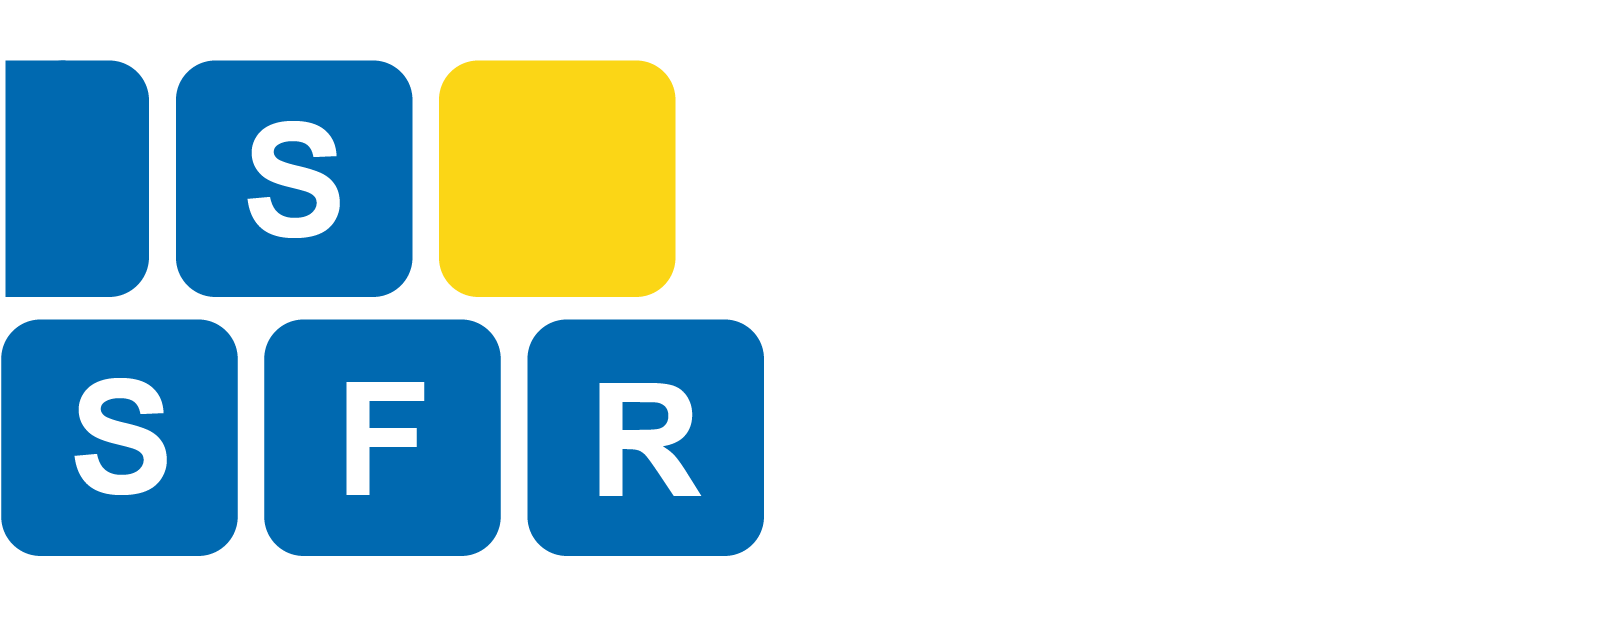 Svenska spelforskarrådet